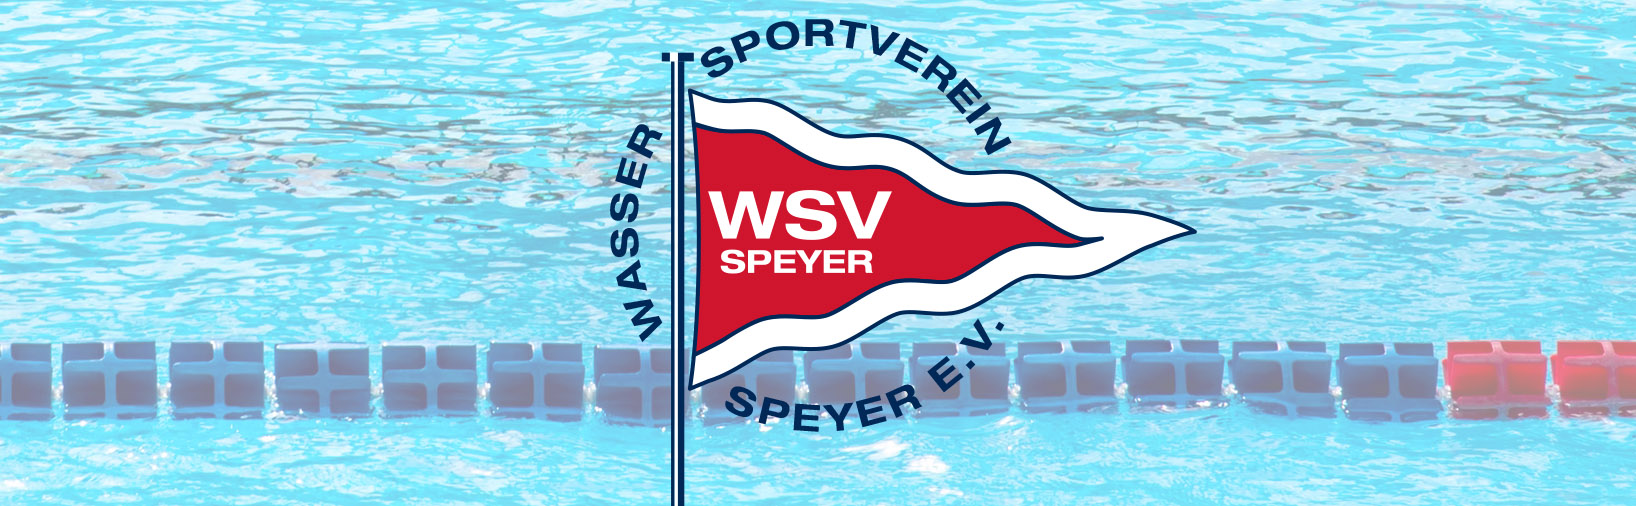 WSV-Speyer